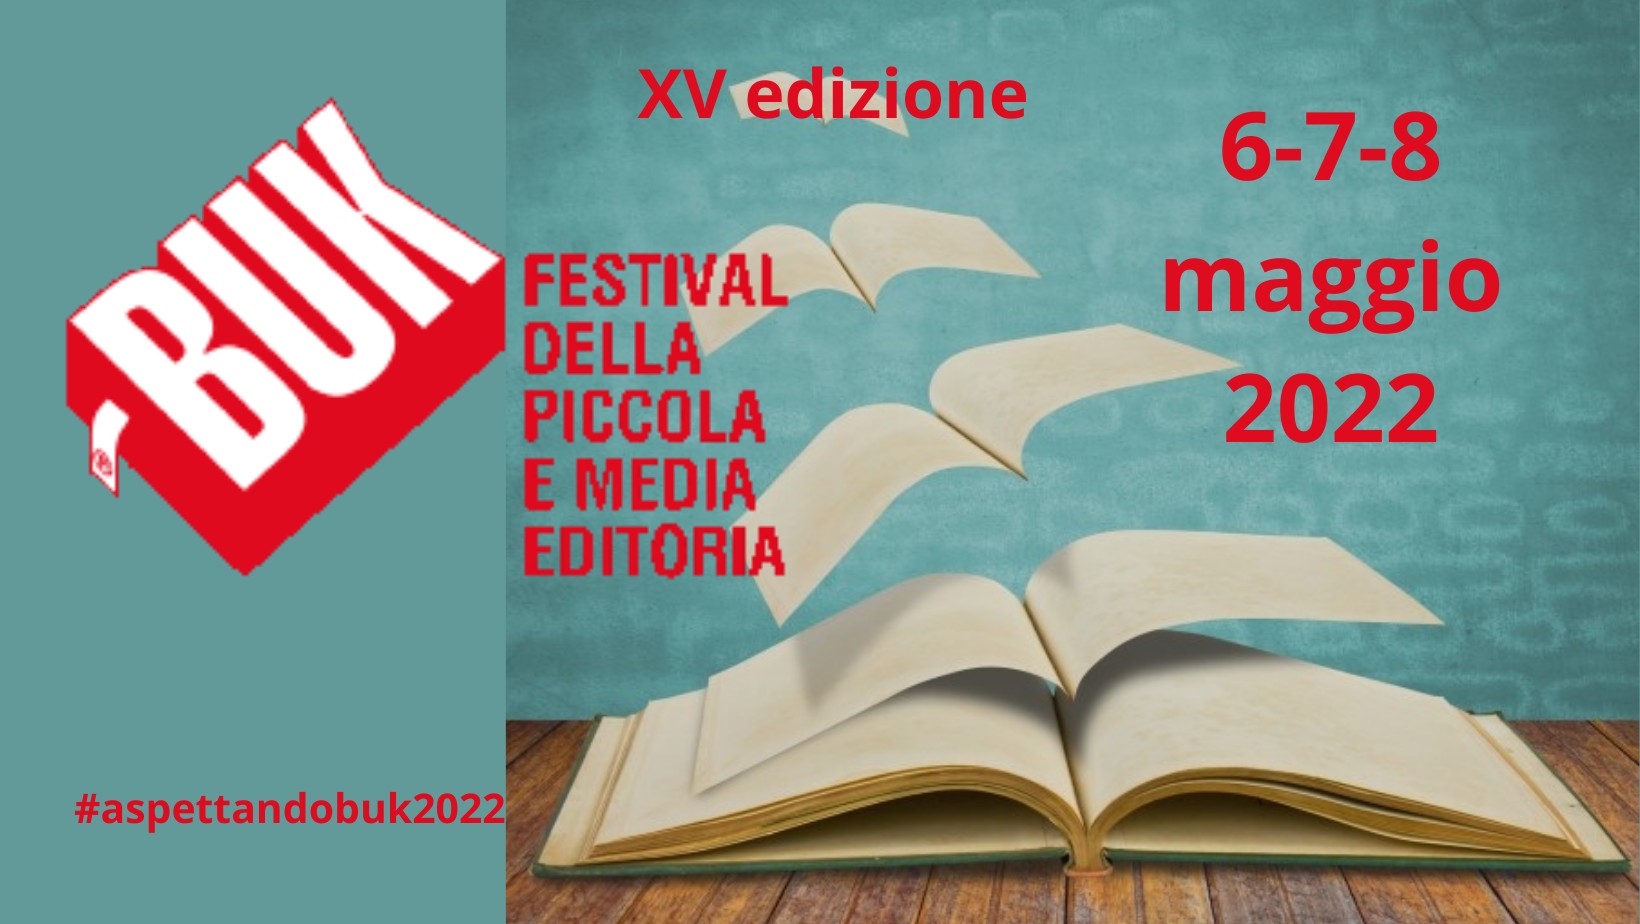 BUK FESTIVAL DELLA PICCOLA E MEDIA EDITORIA - 6/7/8 MAGGIO 2022 MODENA